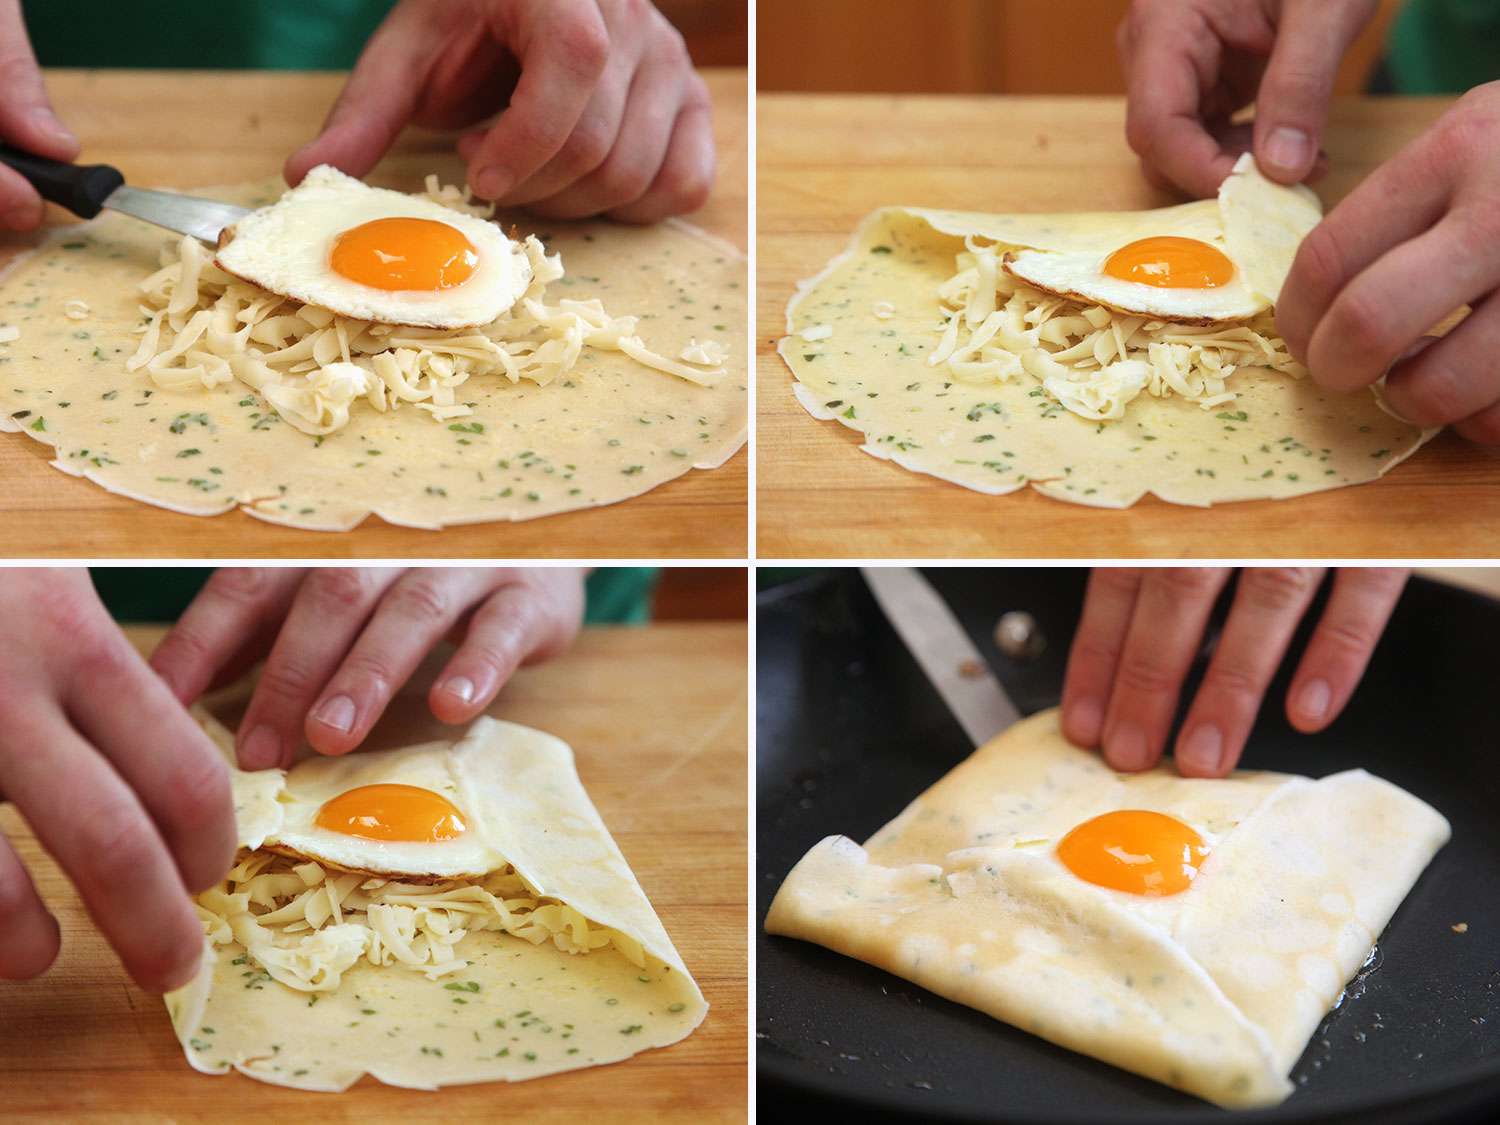 用单面朝上的鸡蛋填充可丽饼的拼贴画:把鸡蛋放在可丽饼的中心，在一堆切碎的奶酪上，把边缘向中心折叠，把填满的可丽饼放在锅里gydF4y2Ba